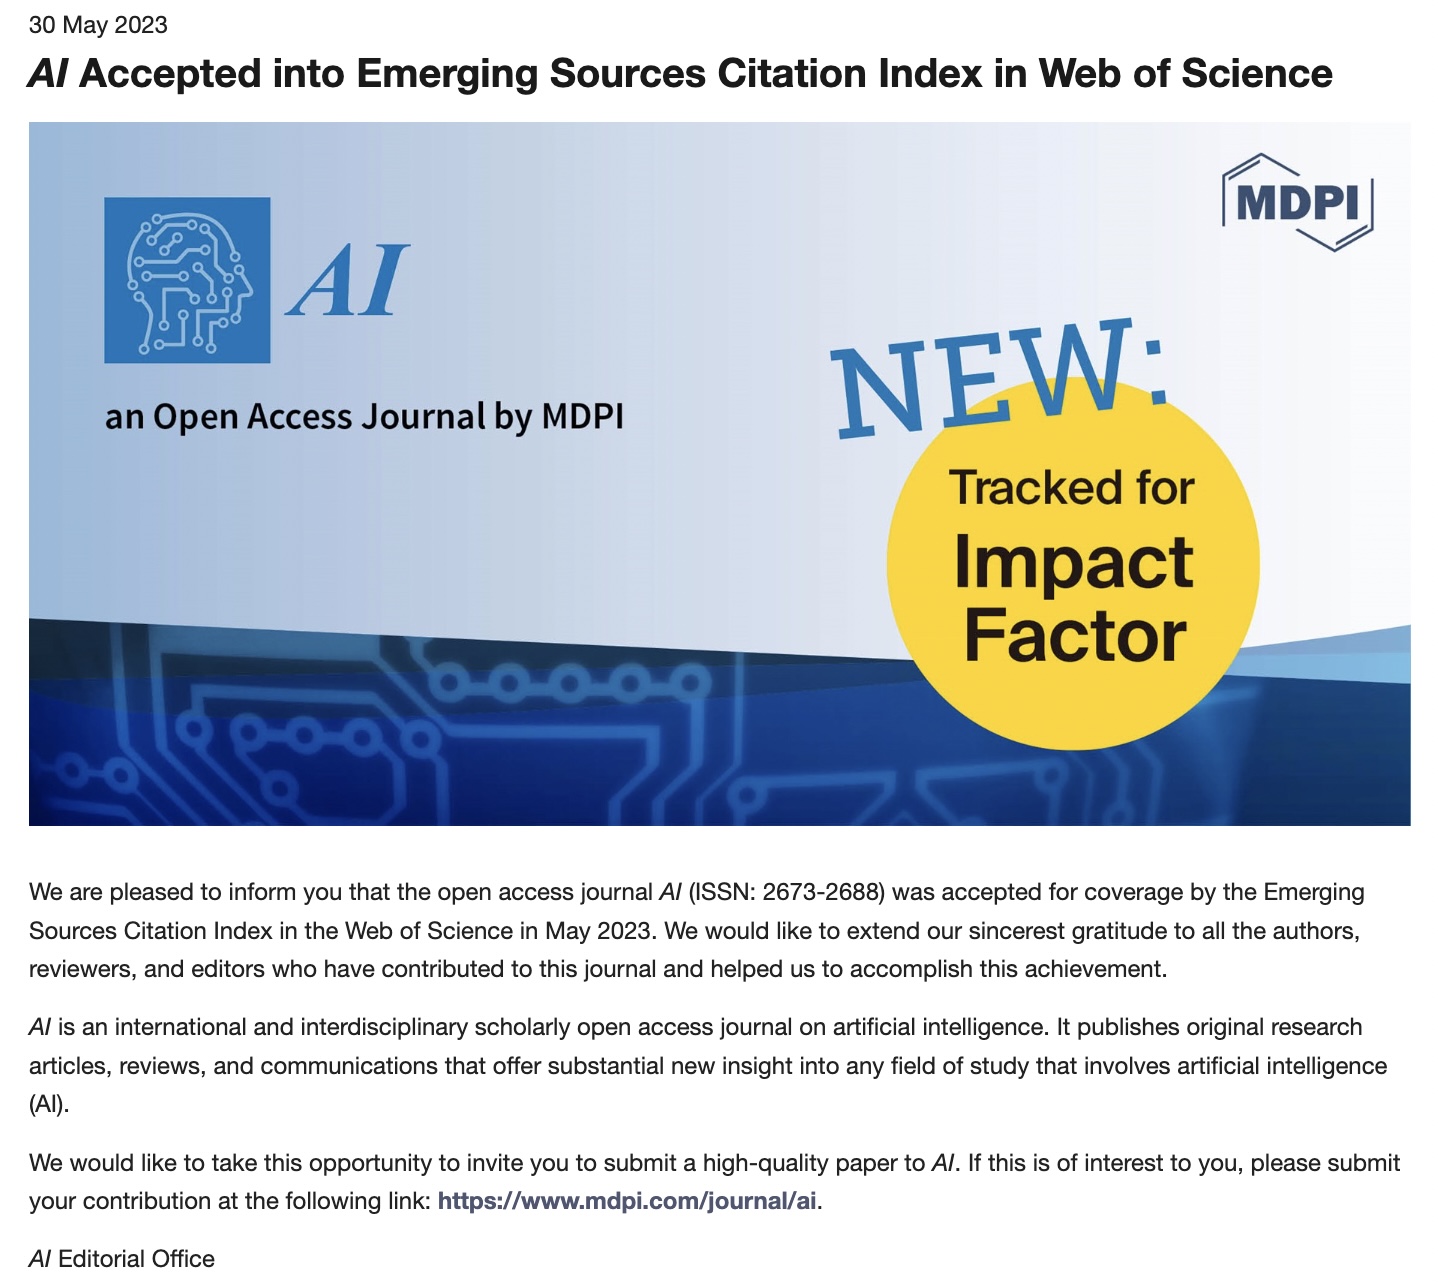 ジャーナル「AI」が Emerging Sources Citation Index に収録されました